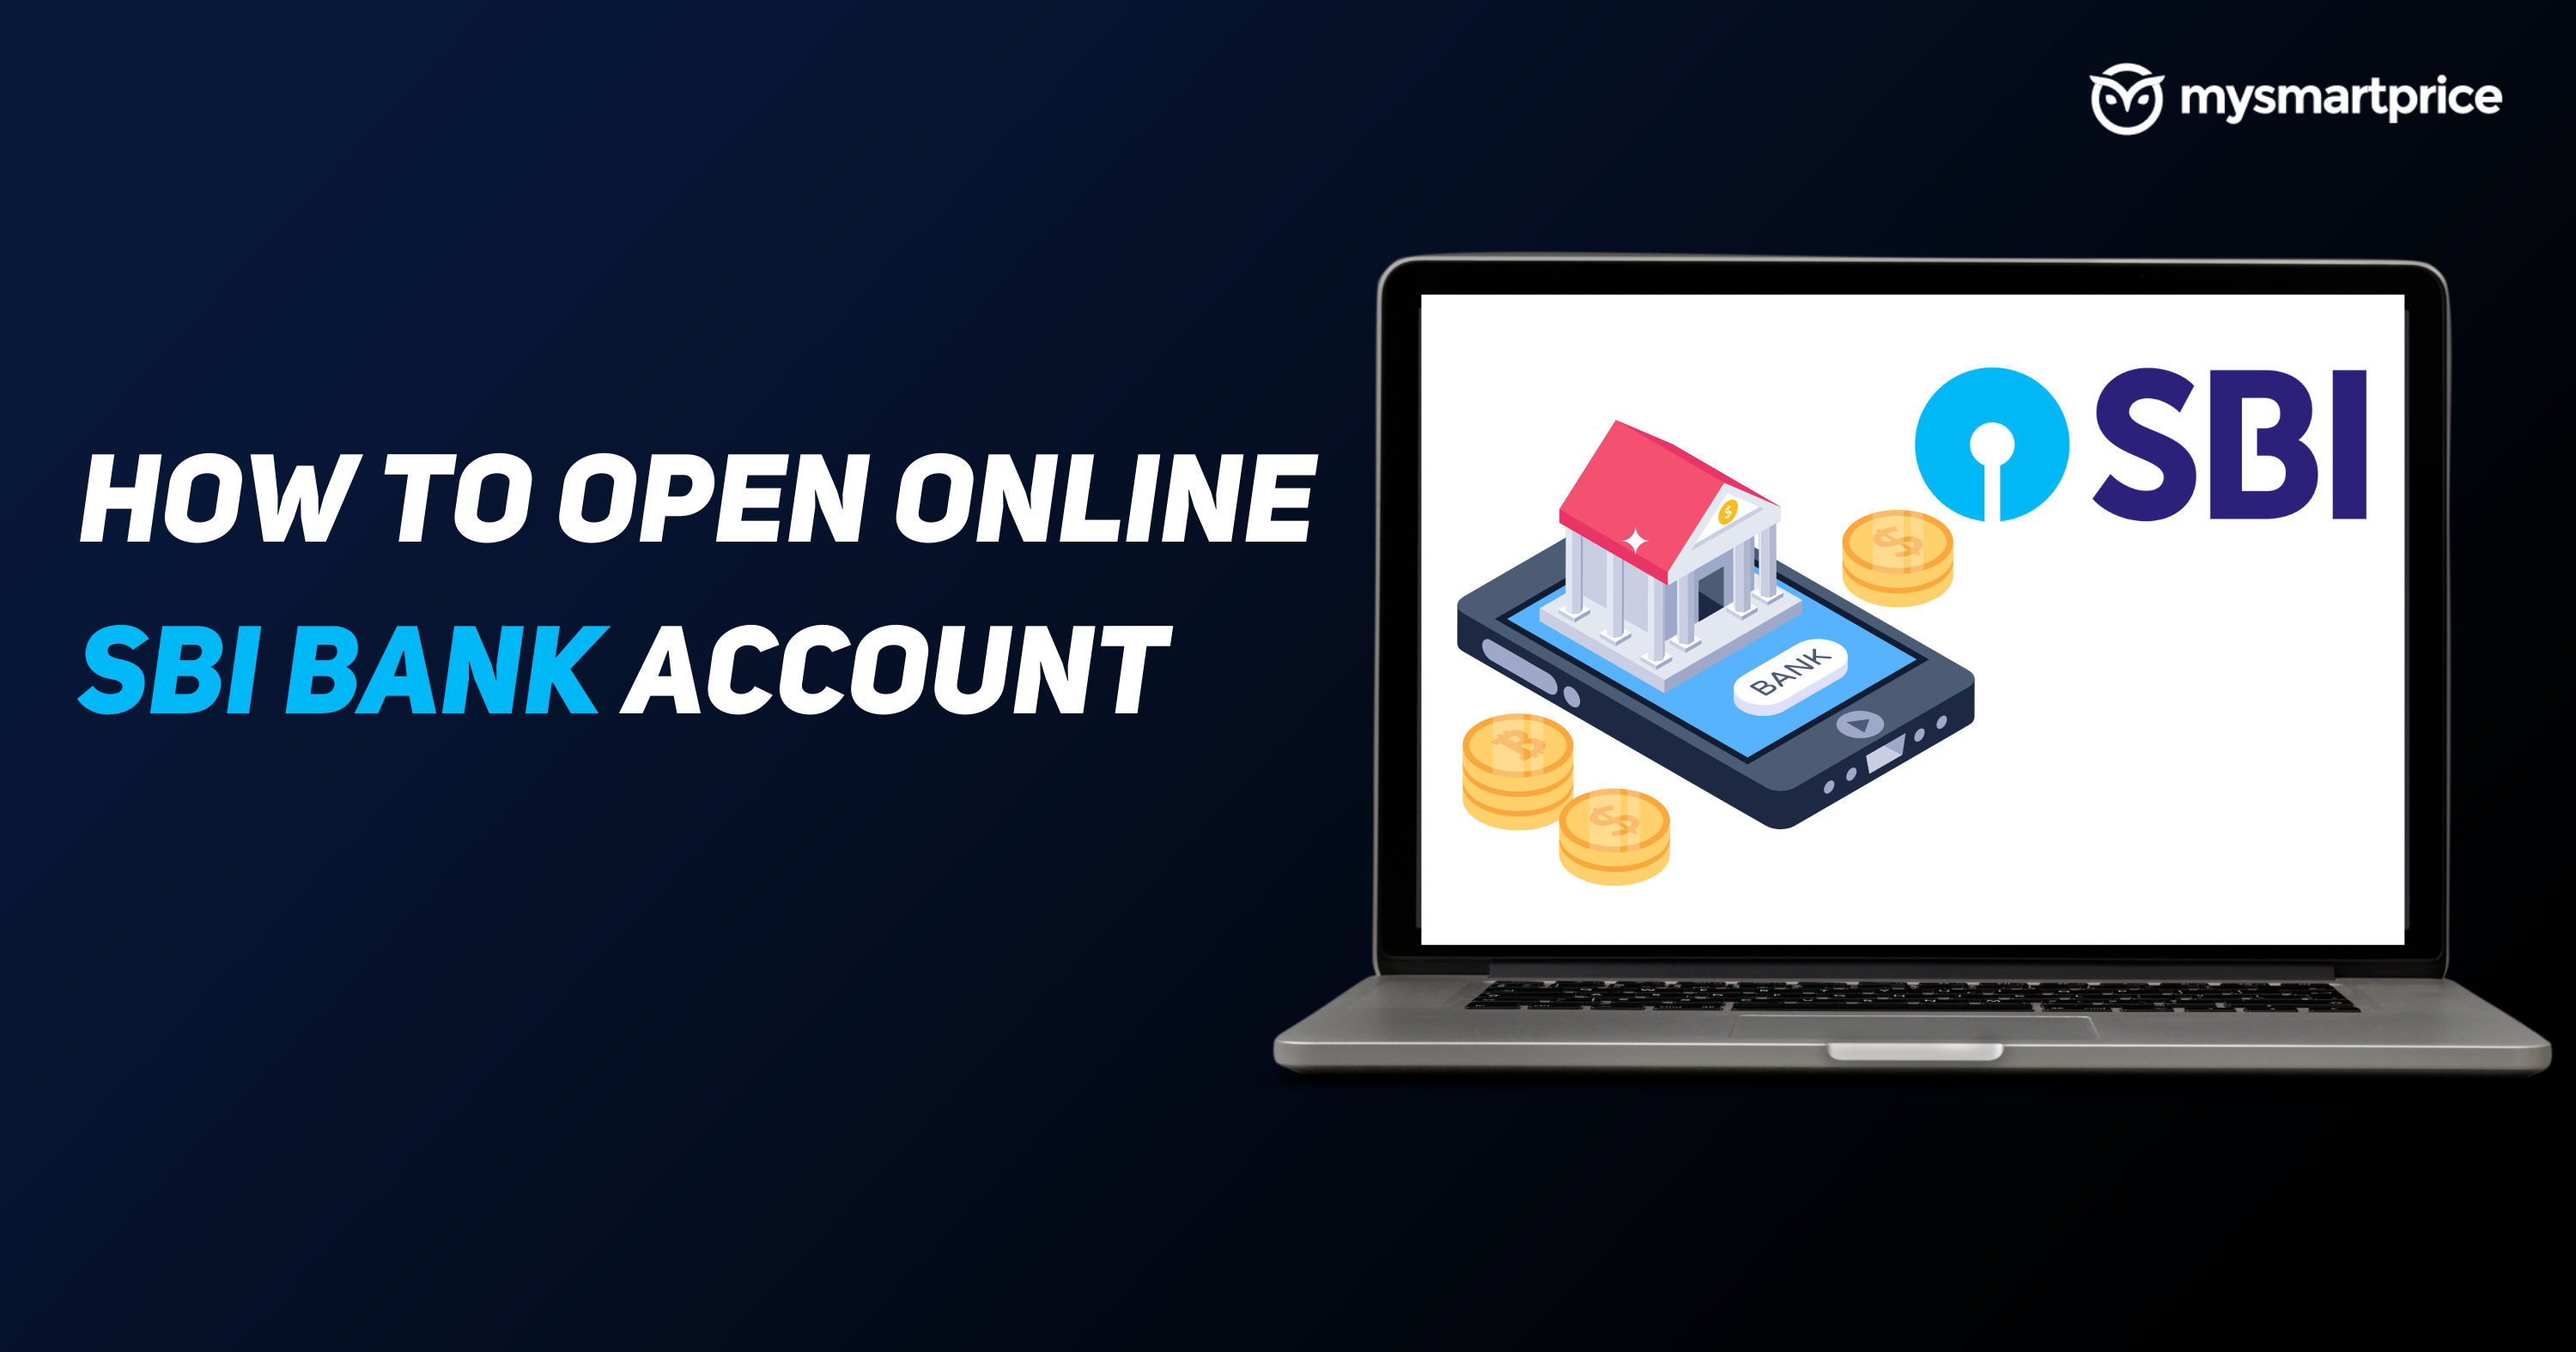 Open SBI Account Online: How to Open Online SBI Bank Account Using ...